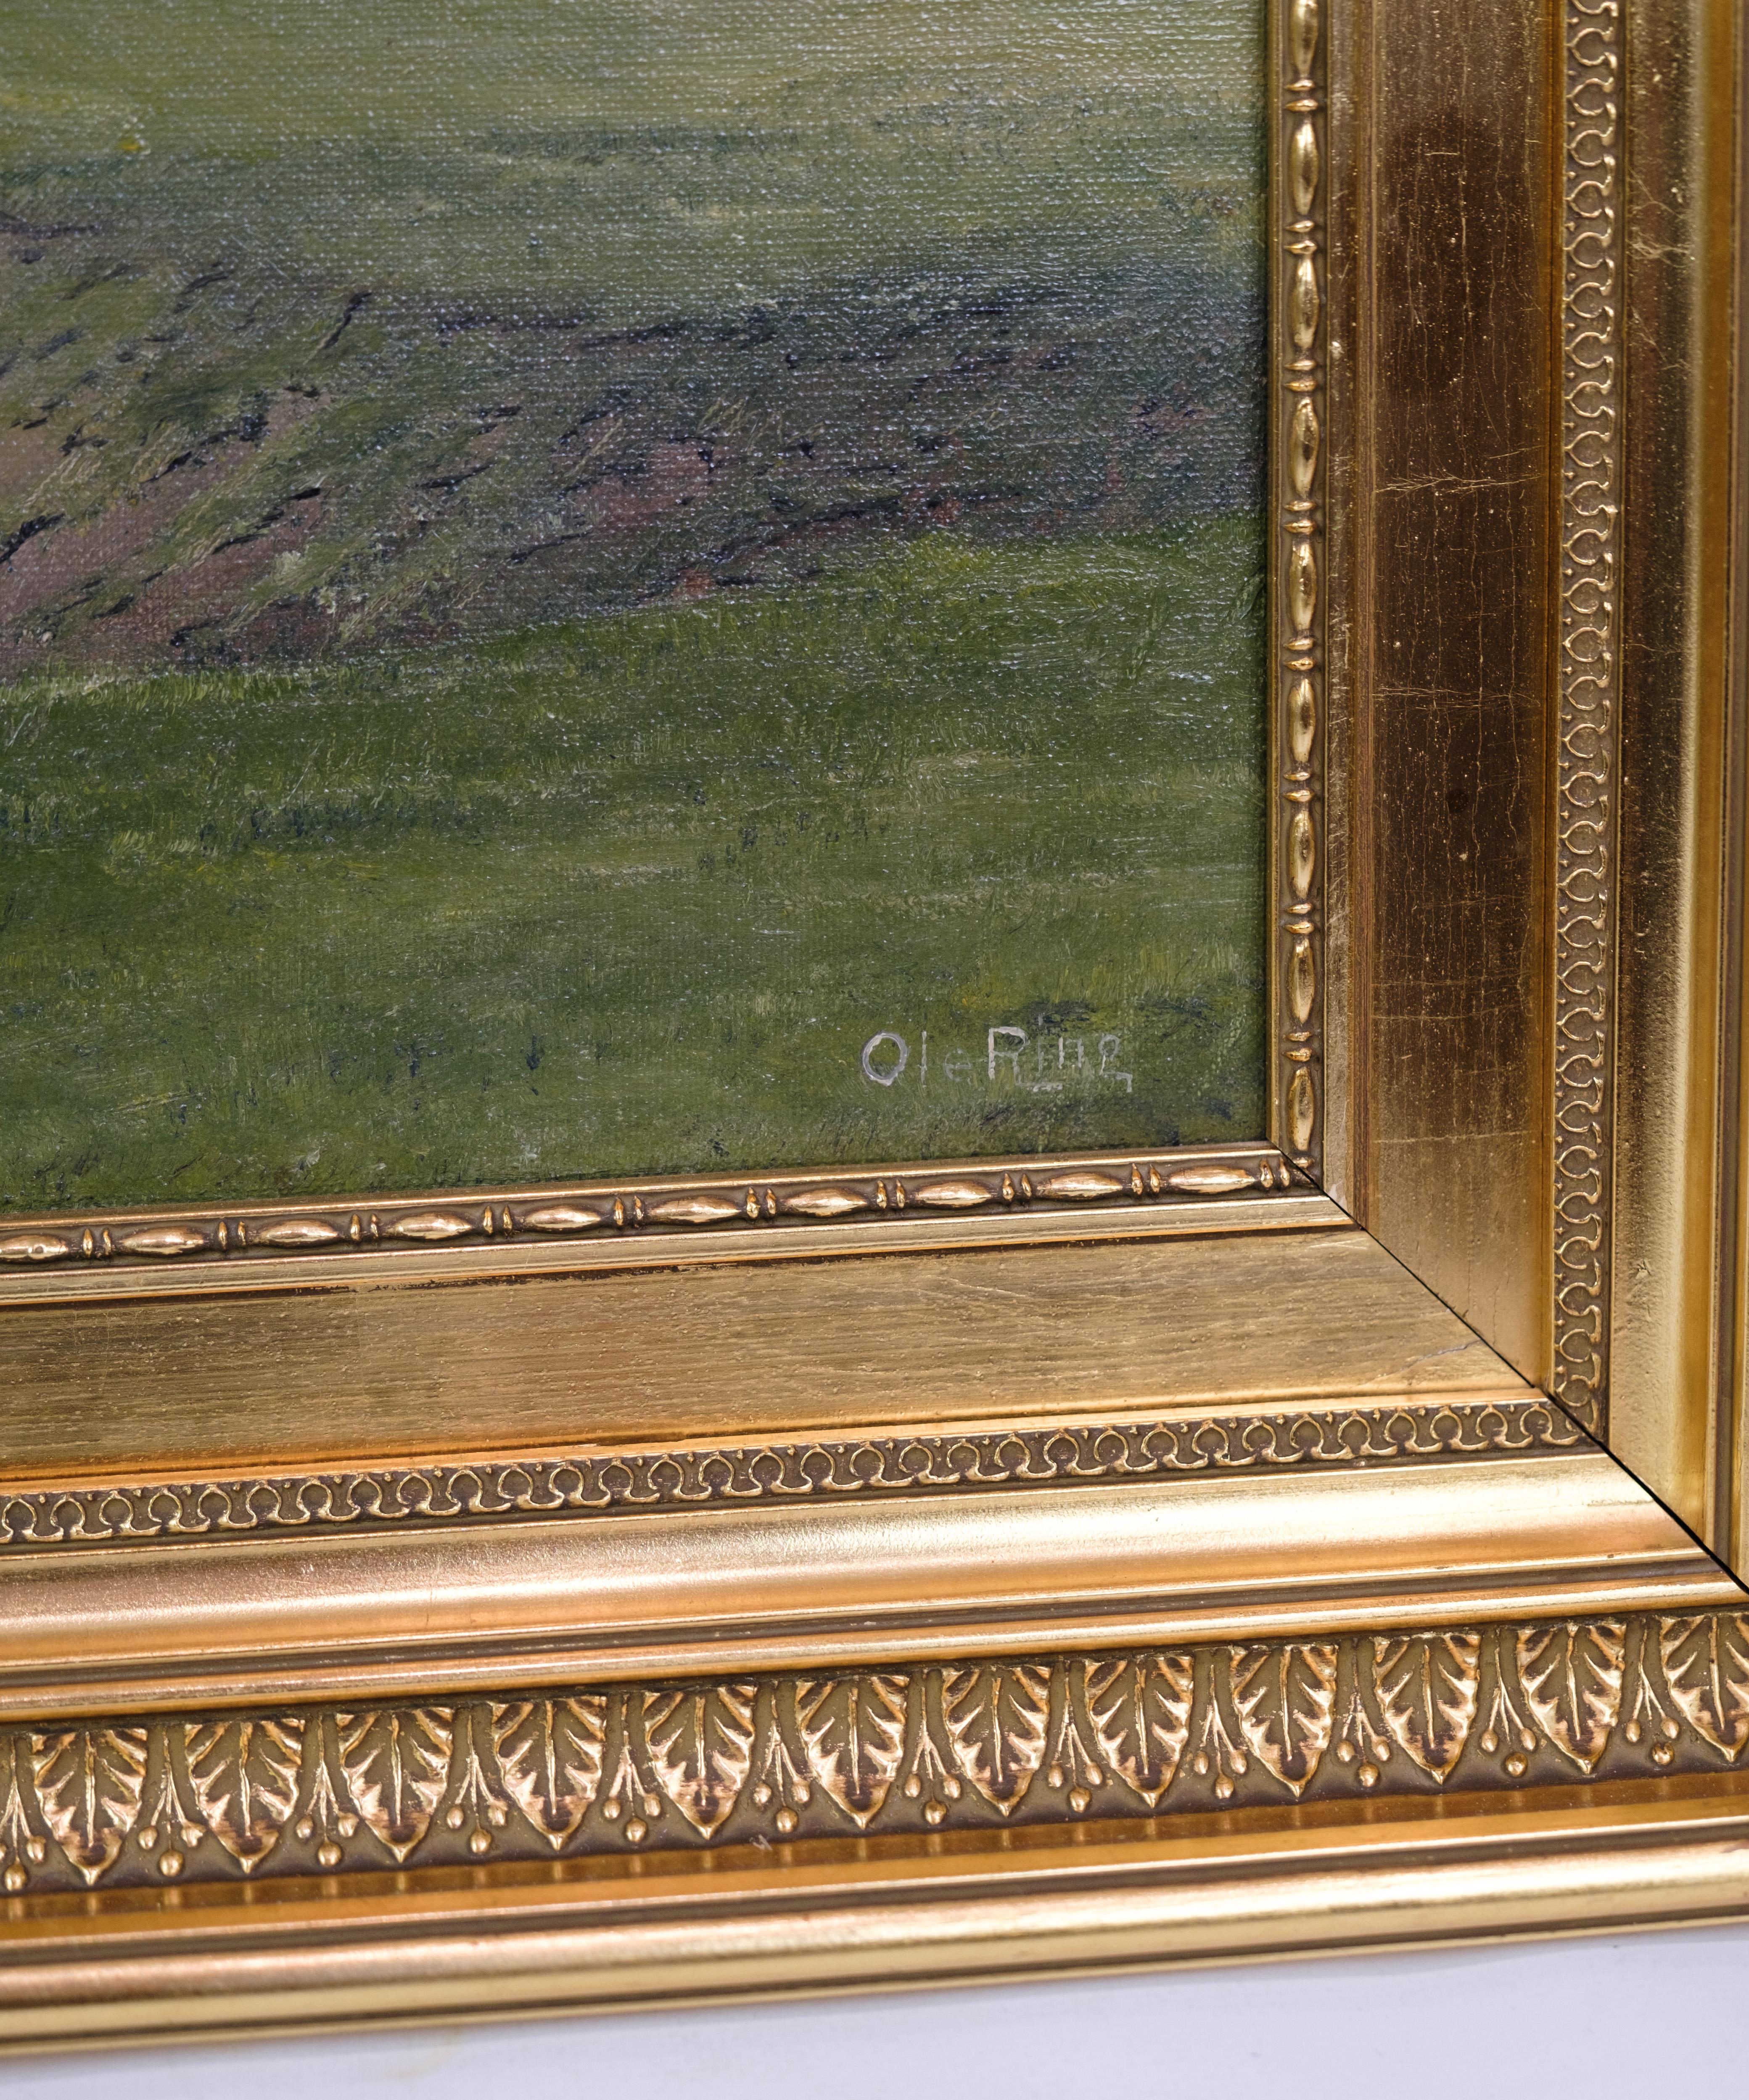 Tableau de paysage avec cadre en feuilles d'or peint par l'artiste Ole Ring (b.1902-d.1972), qui vivait dans la région de Roskilde, au Danemark. L'image illustre vraisemblablement le paysage autour de la forêt de Boserup, ce qui est écrit au dos.
H